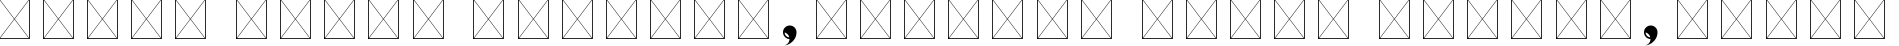 Пример написания шрифтом Eviolite Regular текста на белорусском